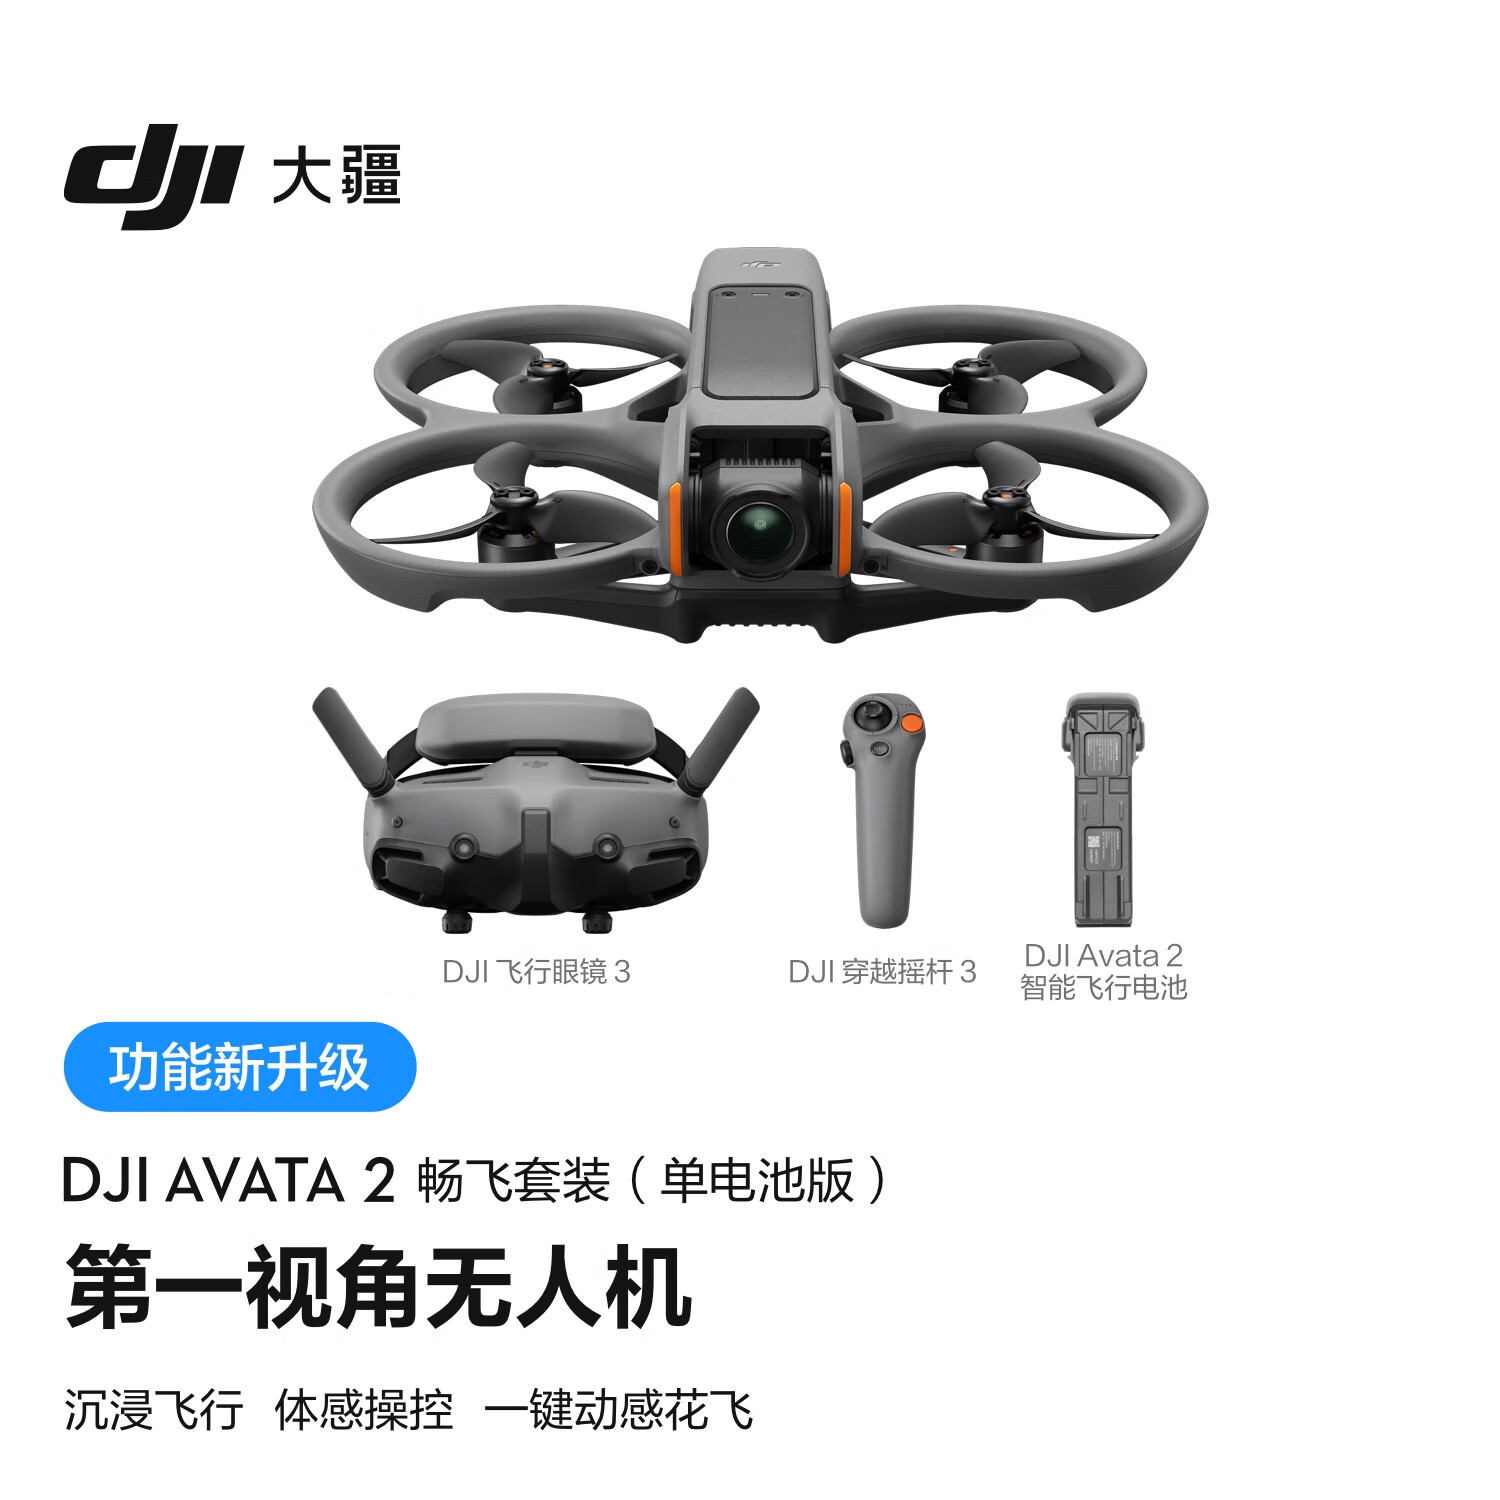 DJI 大疆 Avata 2 航拍无人机 畅飞套装 单电池版 5988元